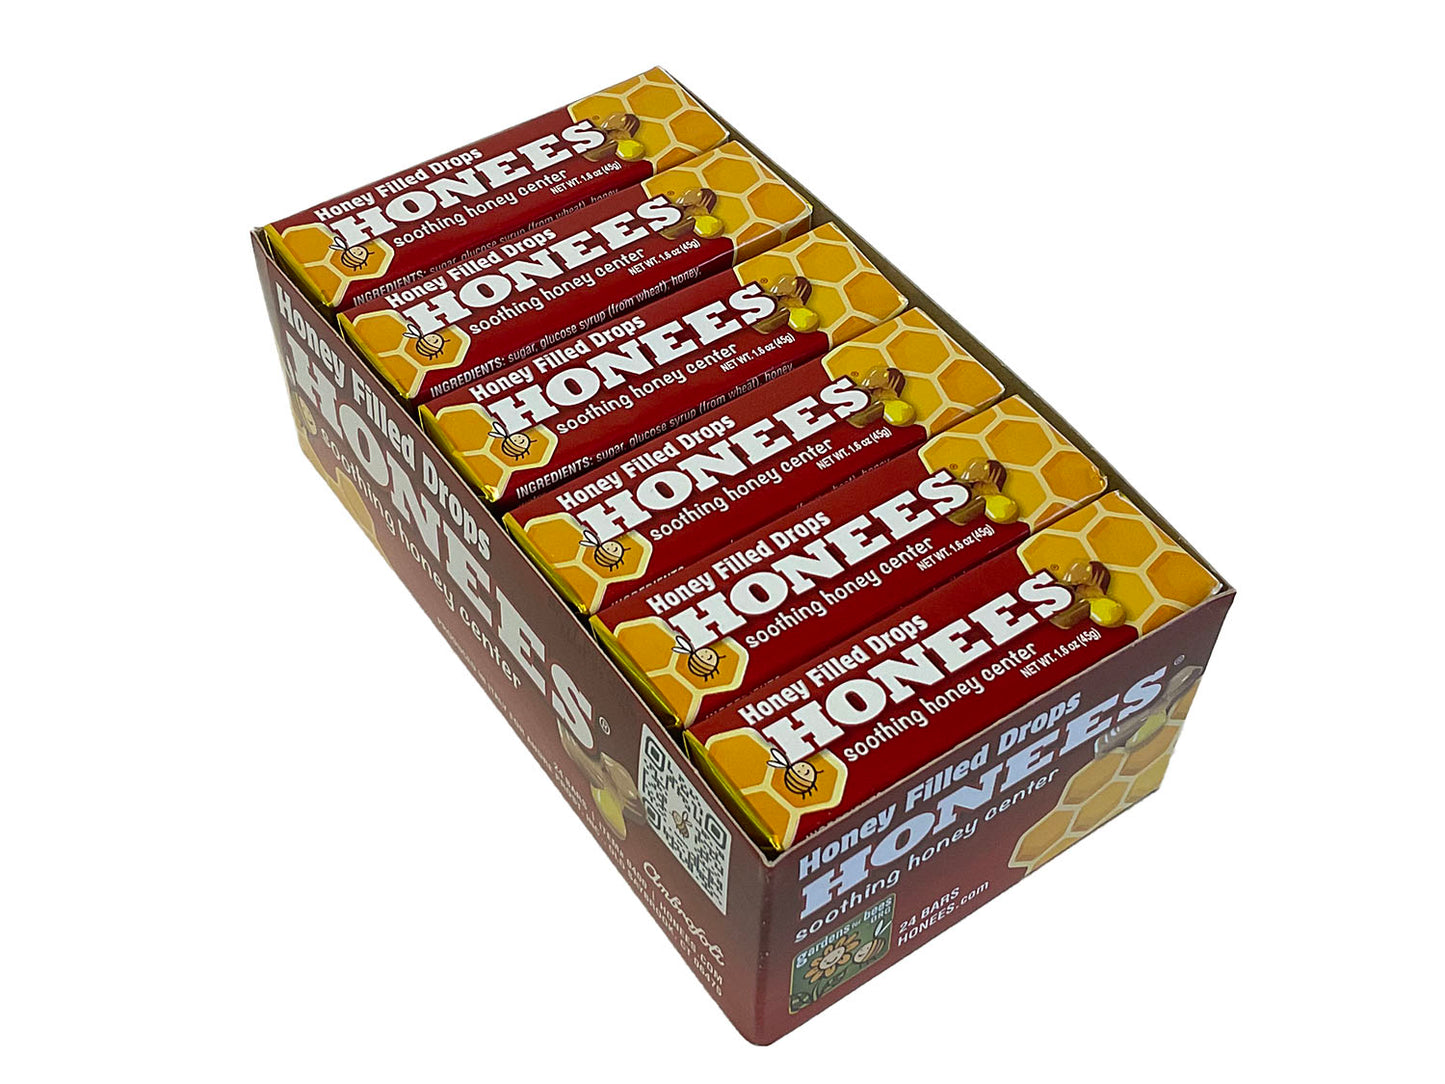 Honees Original Drops - 1.6 oz pkg - box of 24